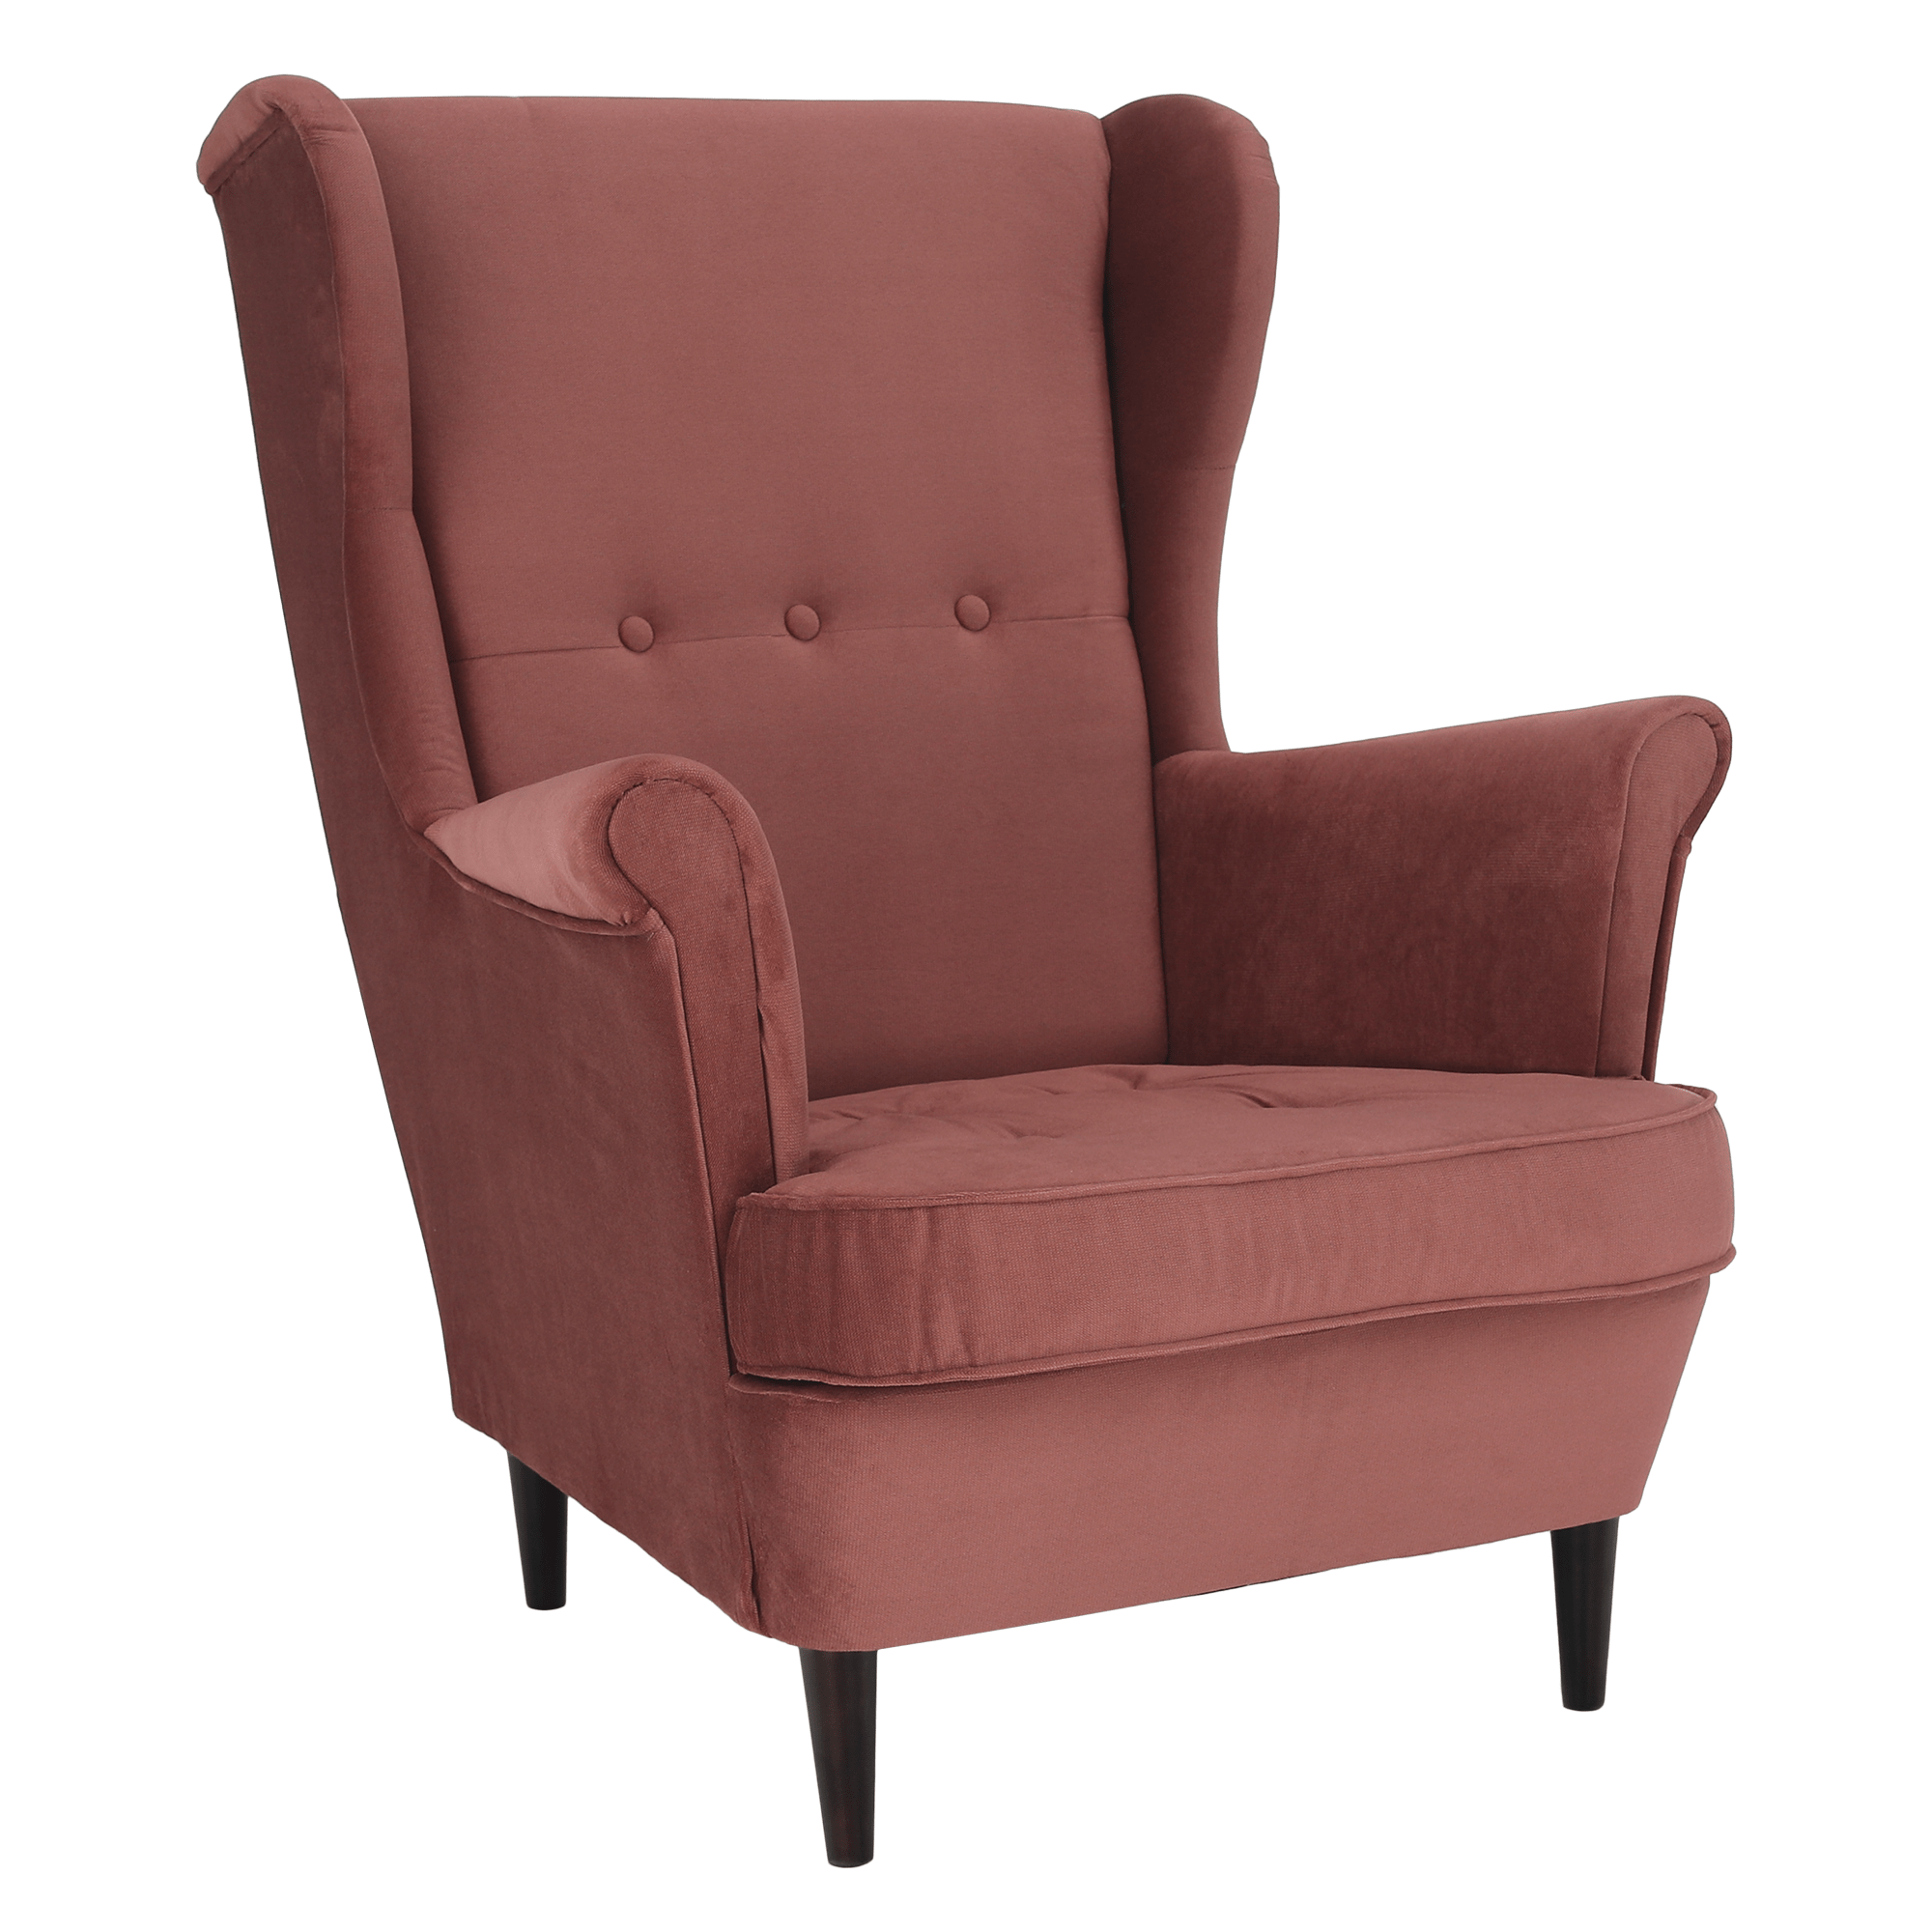 Füles fotel, vén rózsaszín/dió, RUFINO NEW